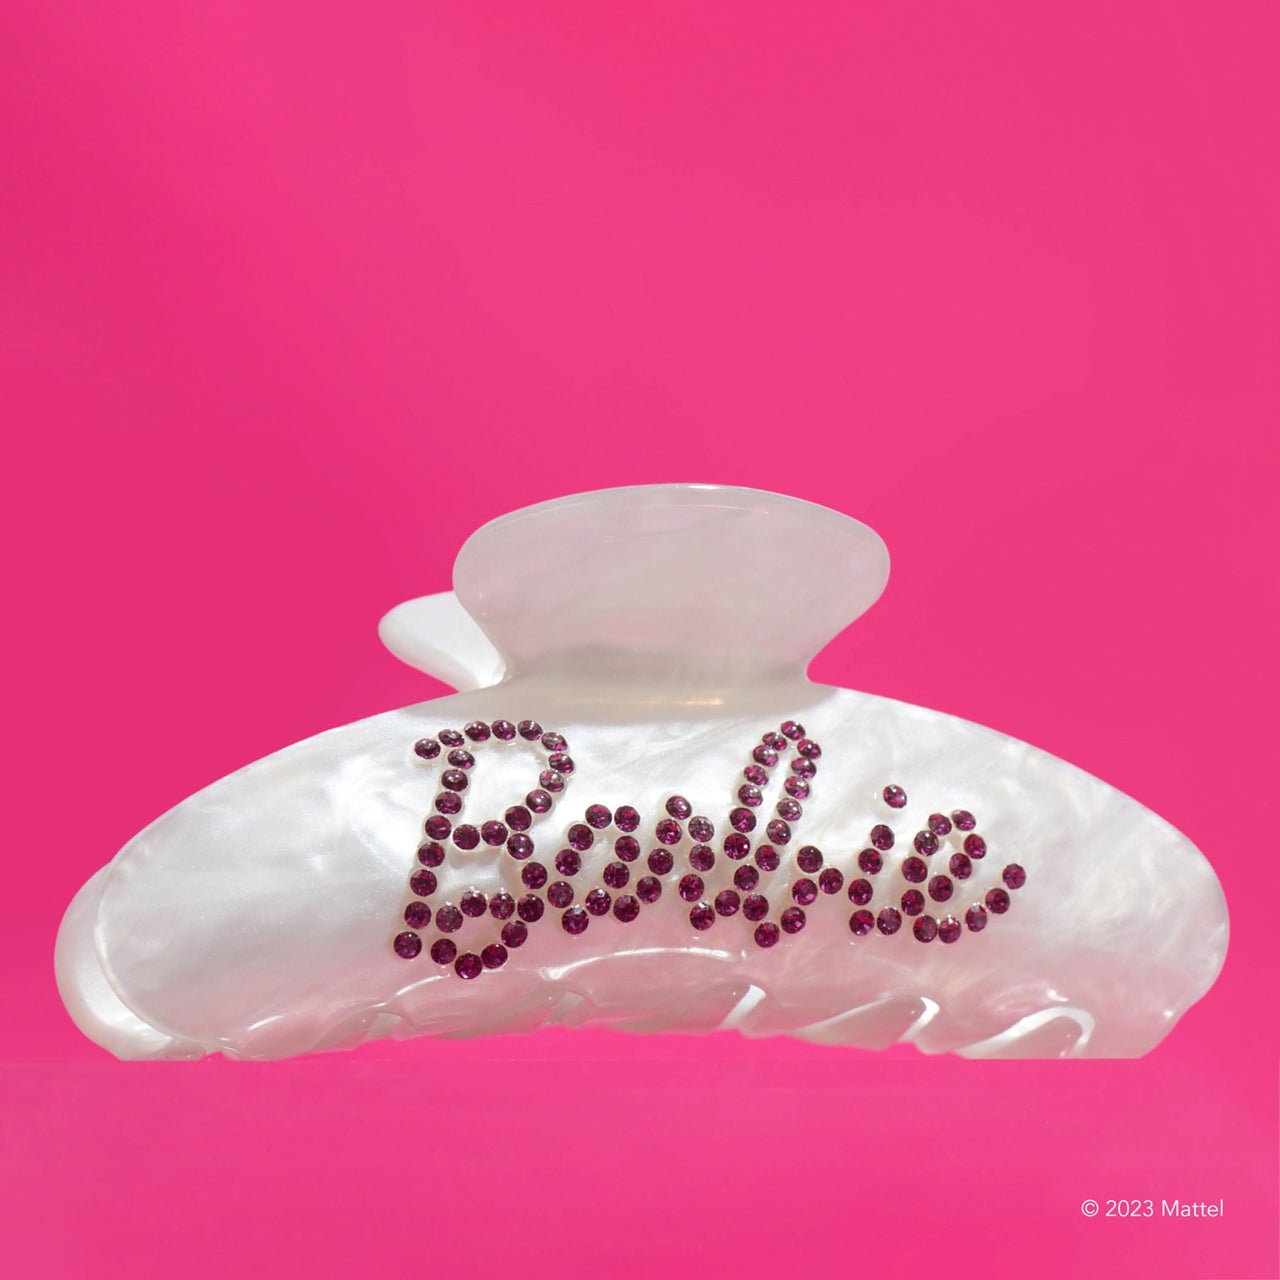 Barbie™ x Pacote de colecionador Kitsch